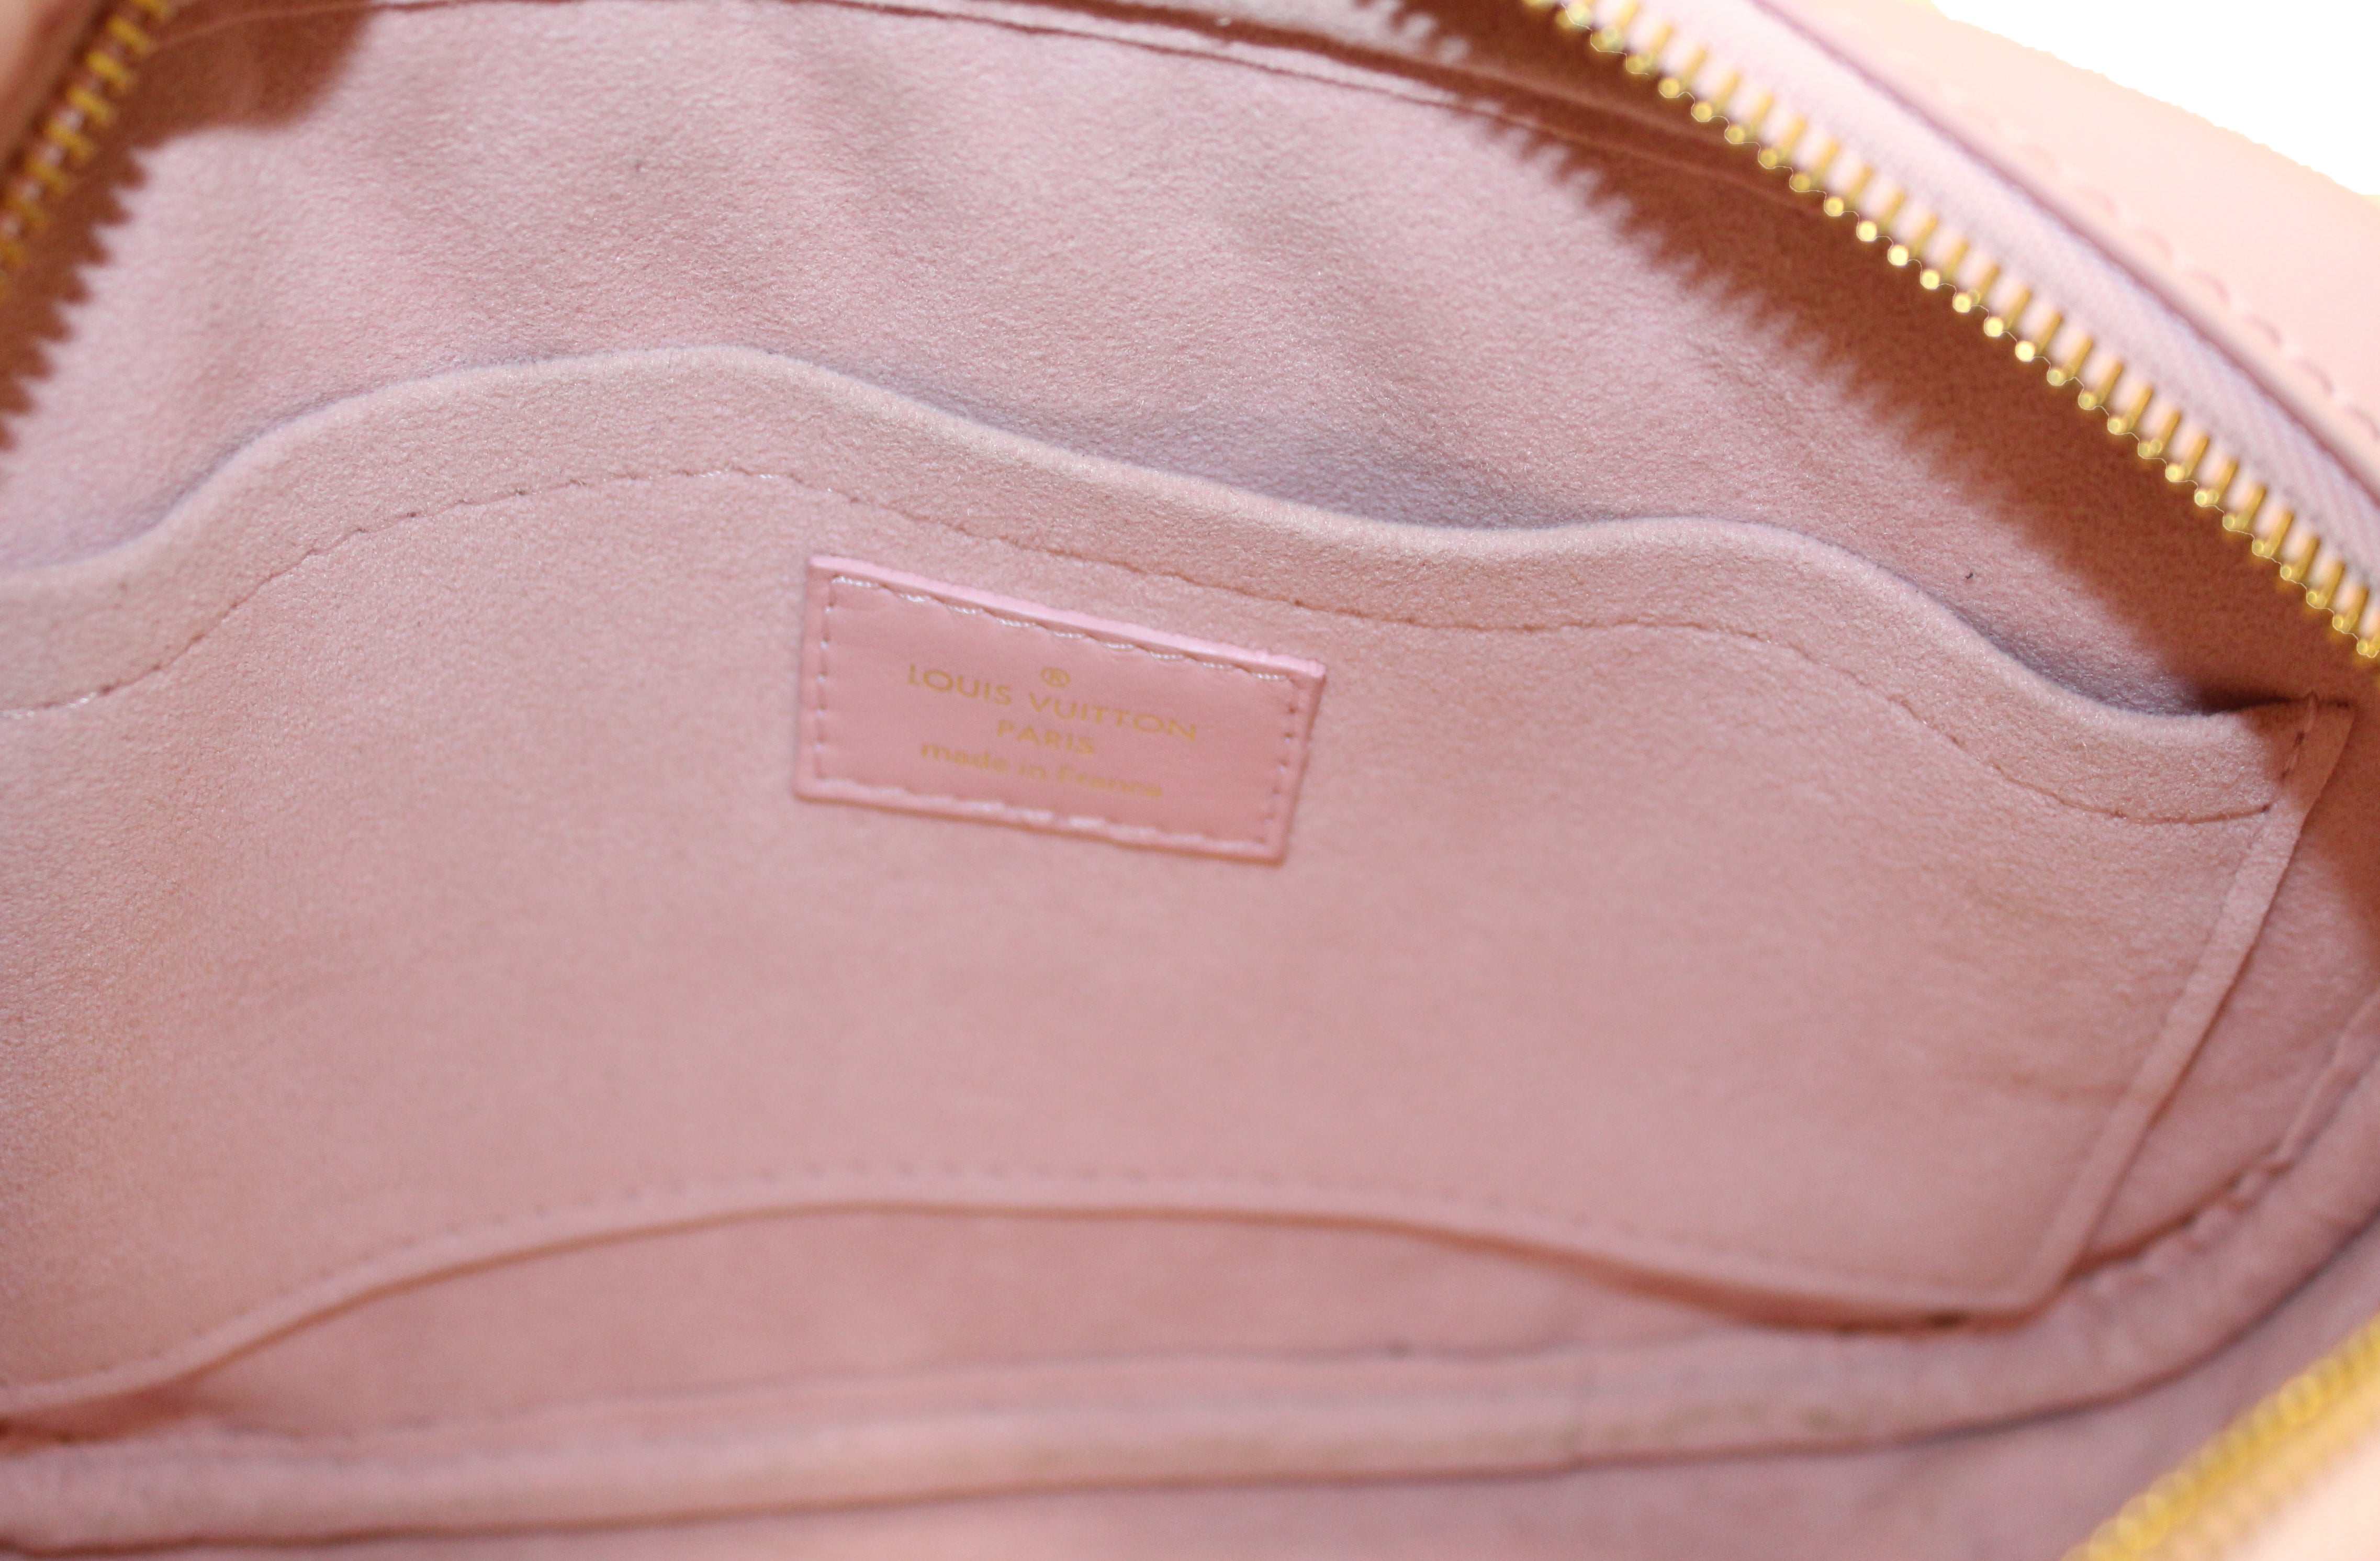 Authentic LOUIS VUITTON New Wave Camera Bag Shoulder Bag, Pink, Super Cute!!